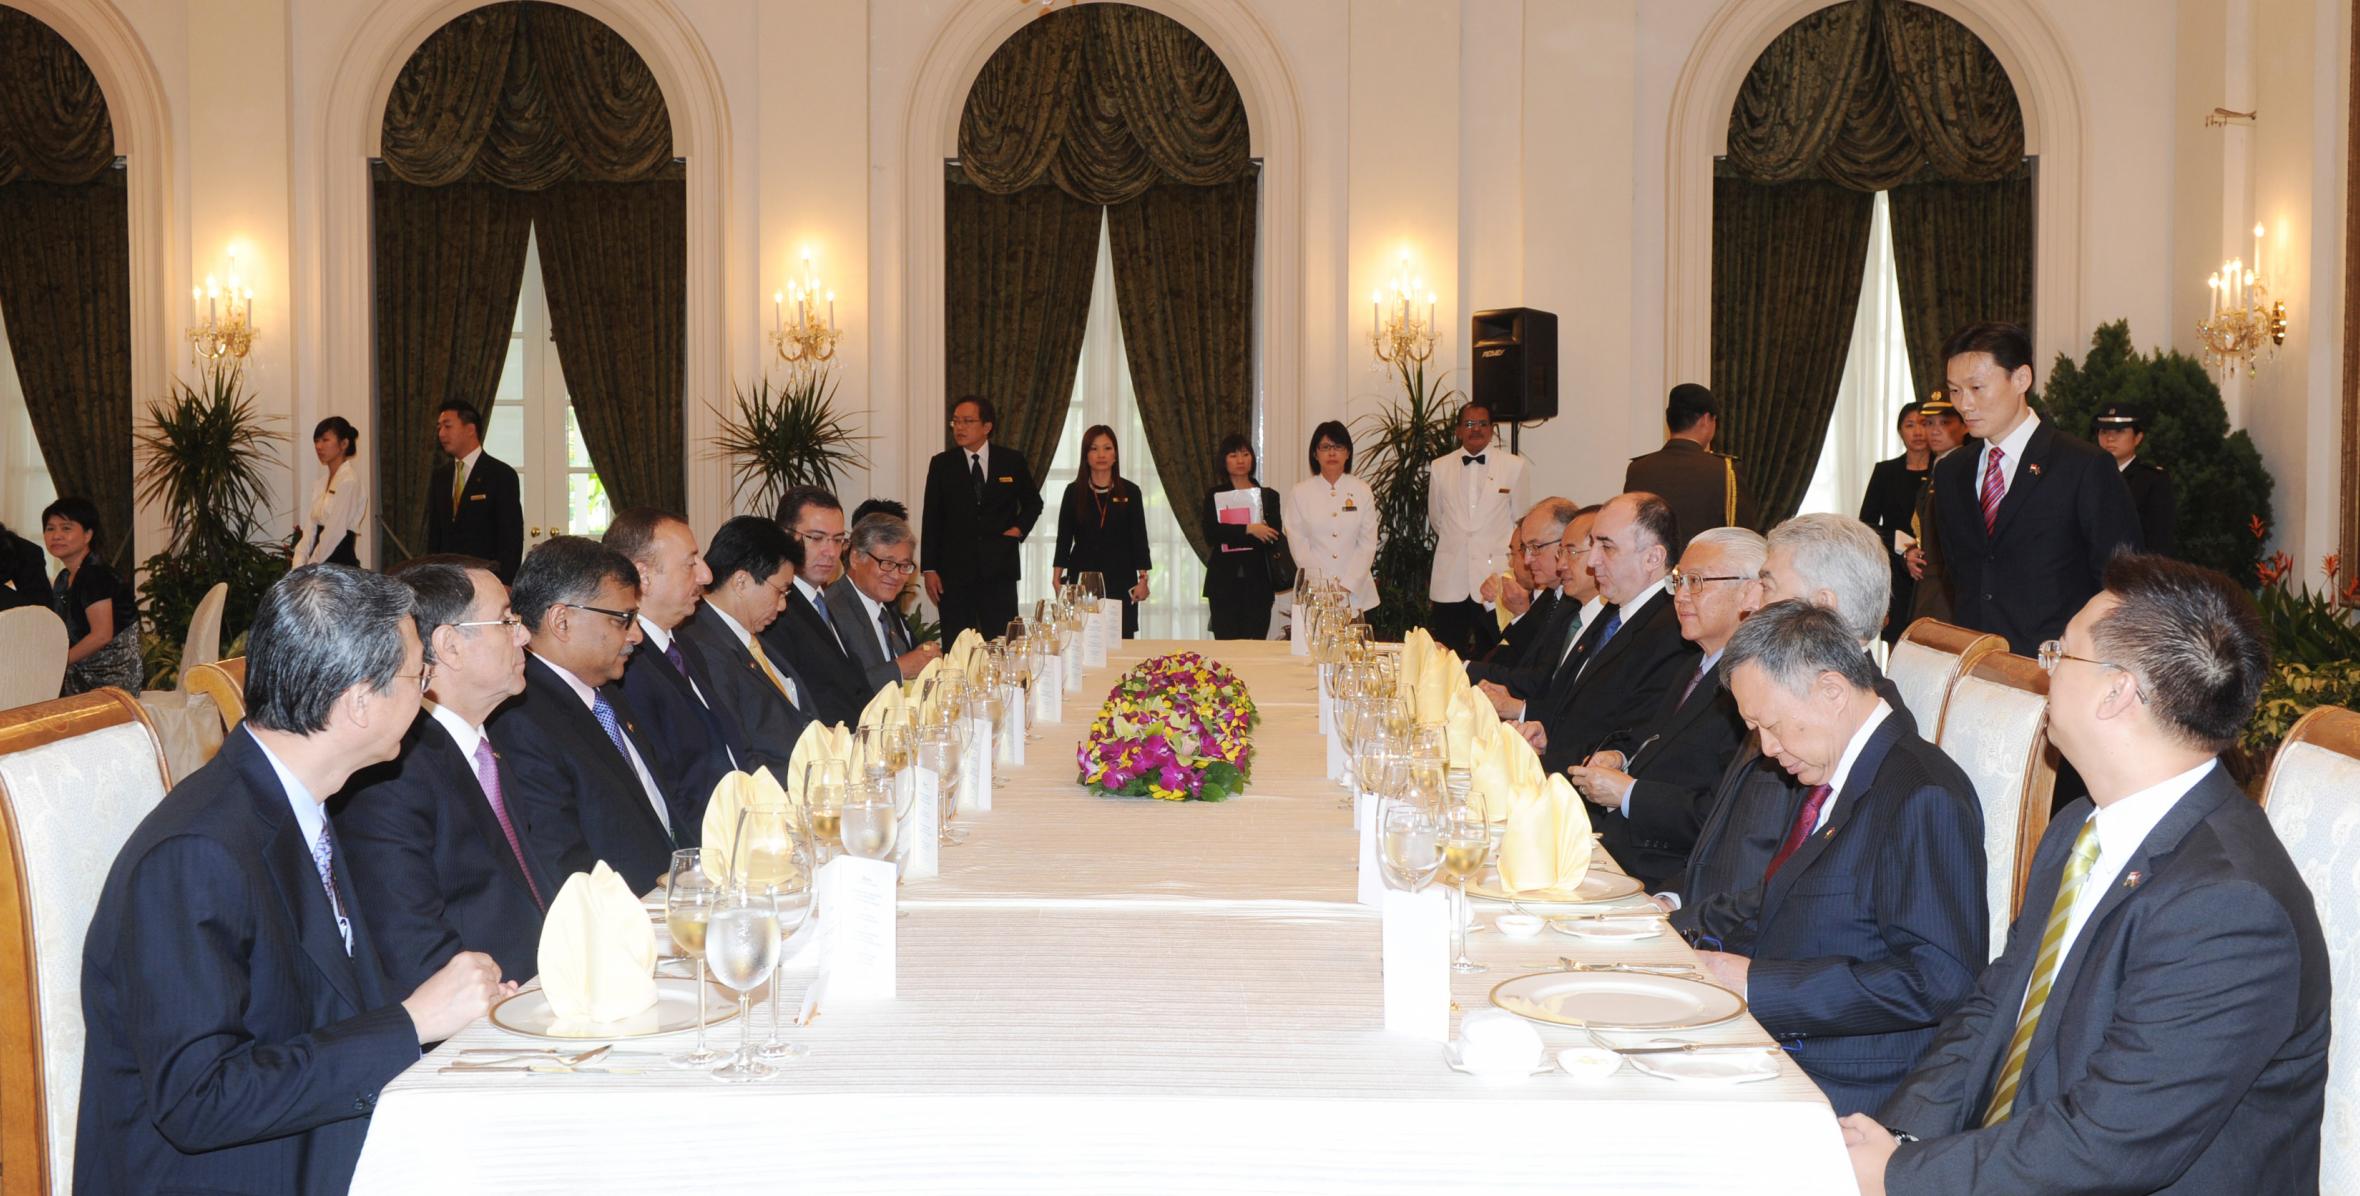 В Сингапуре был дан официальный обед в честь Ильхама Алиева